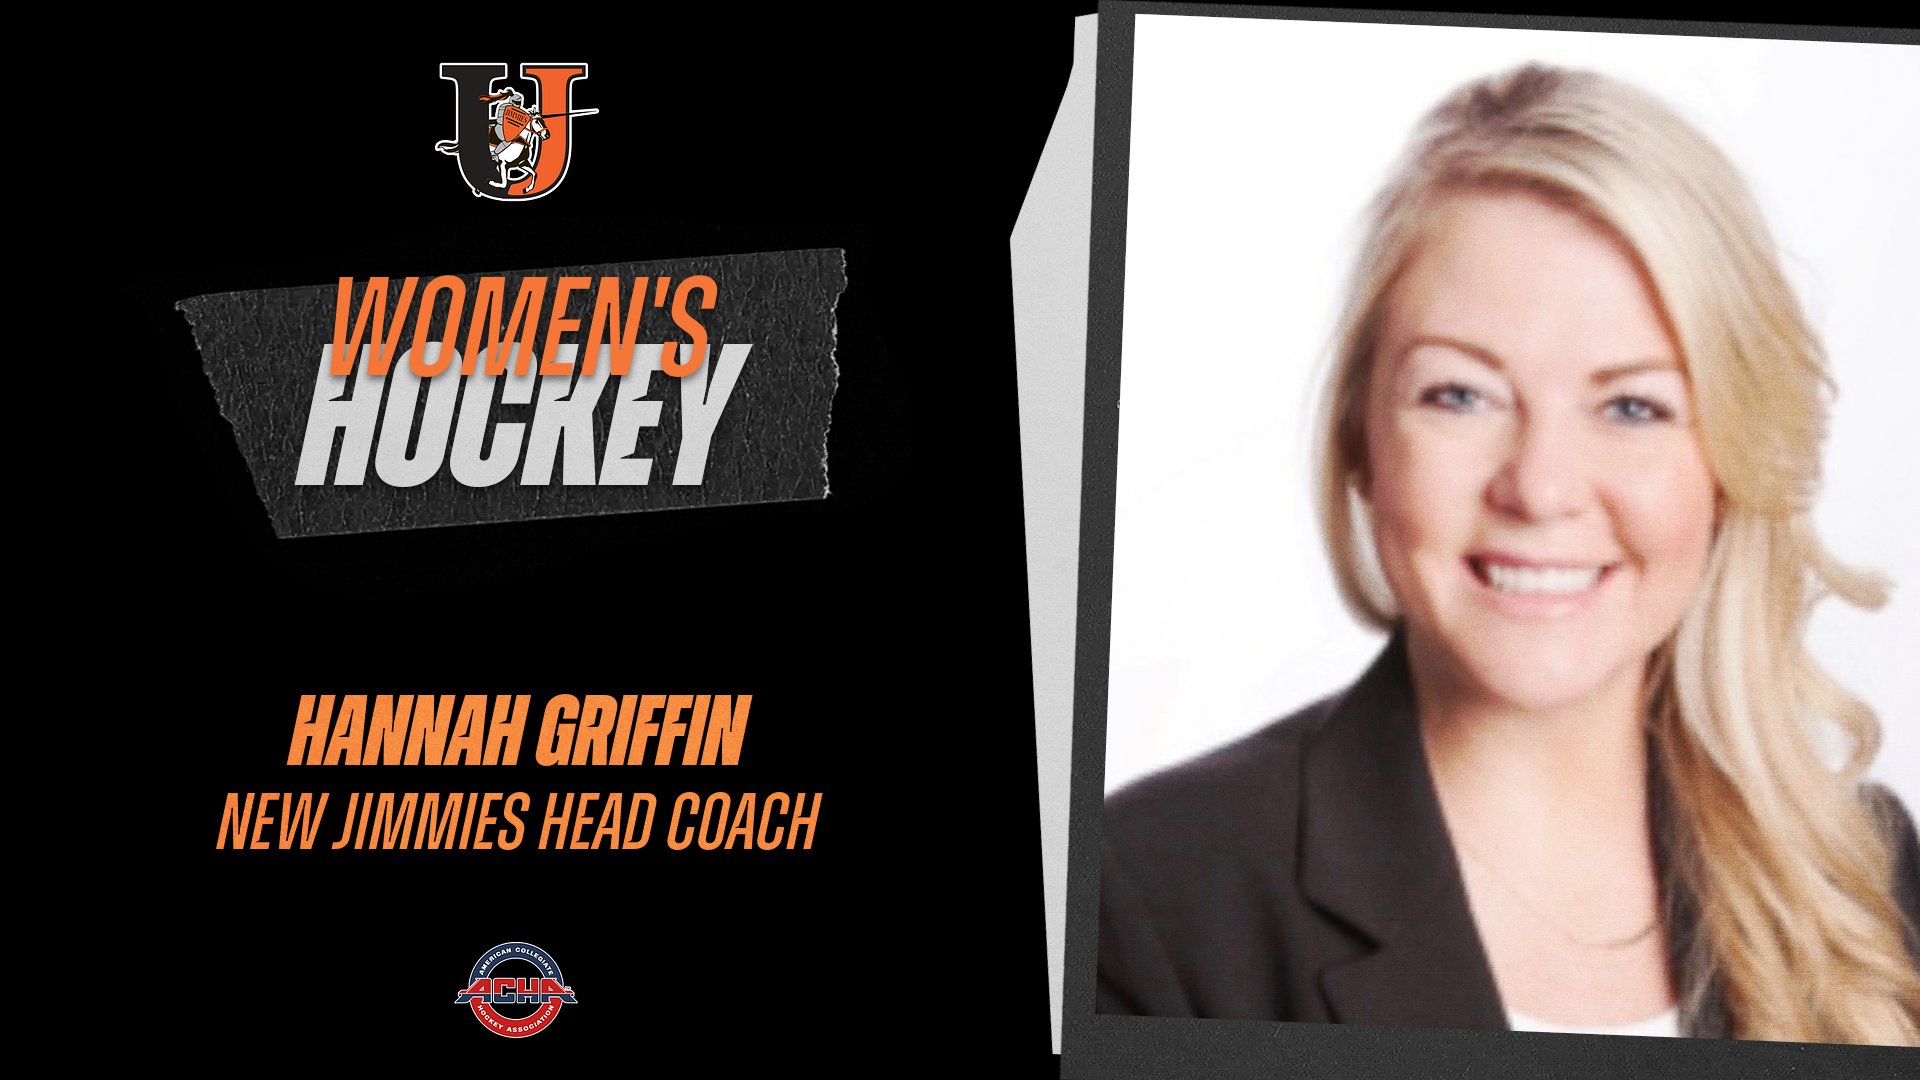 Hannah Griffin named new women's hockey head coach